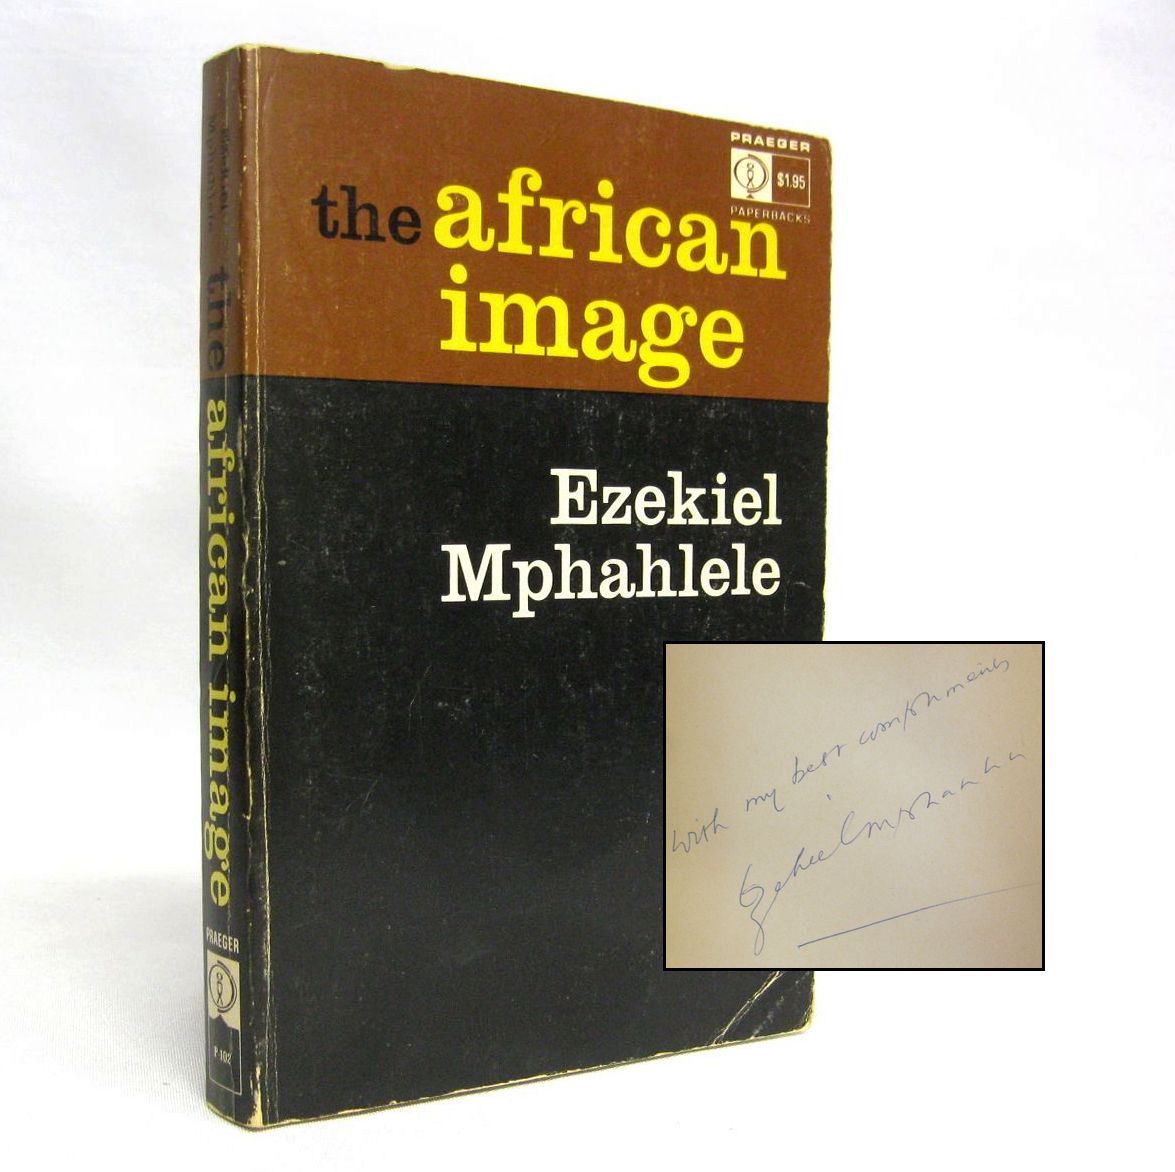 The African Image by Ezekiel Mphahlele